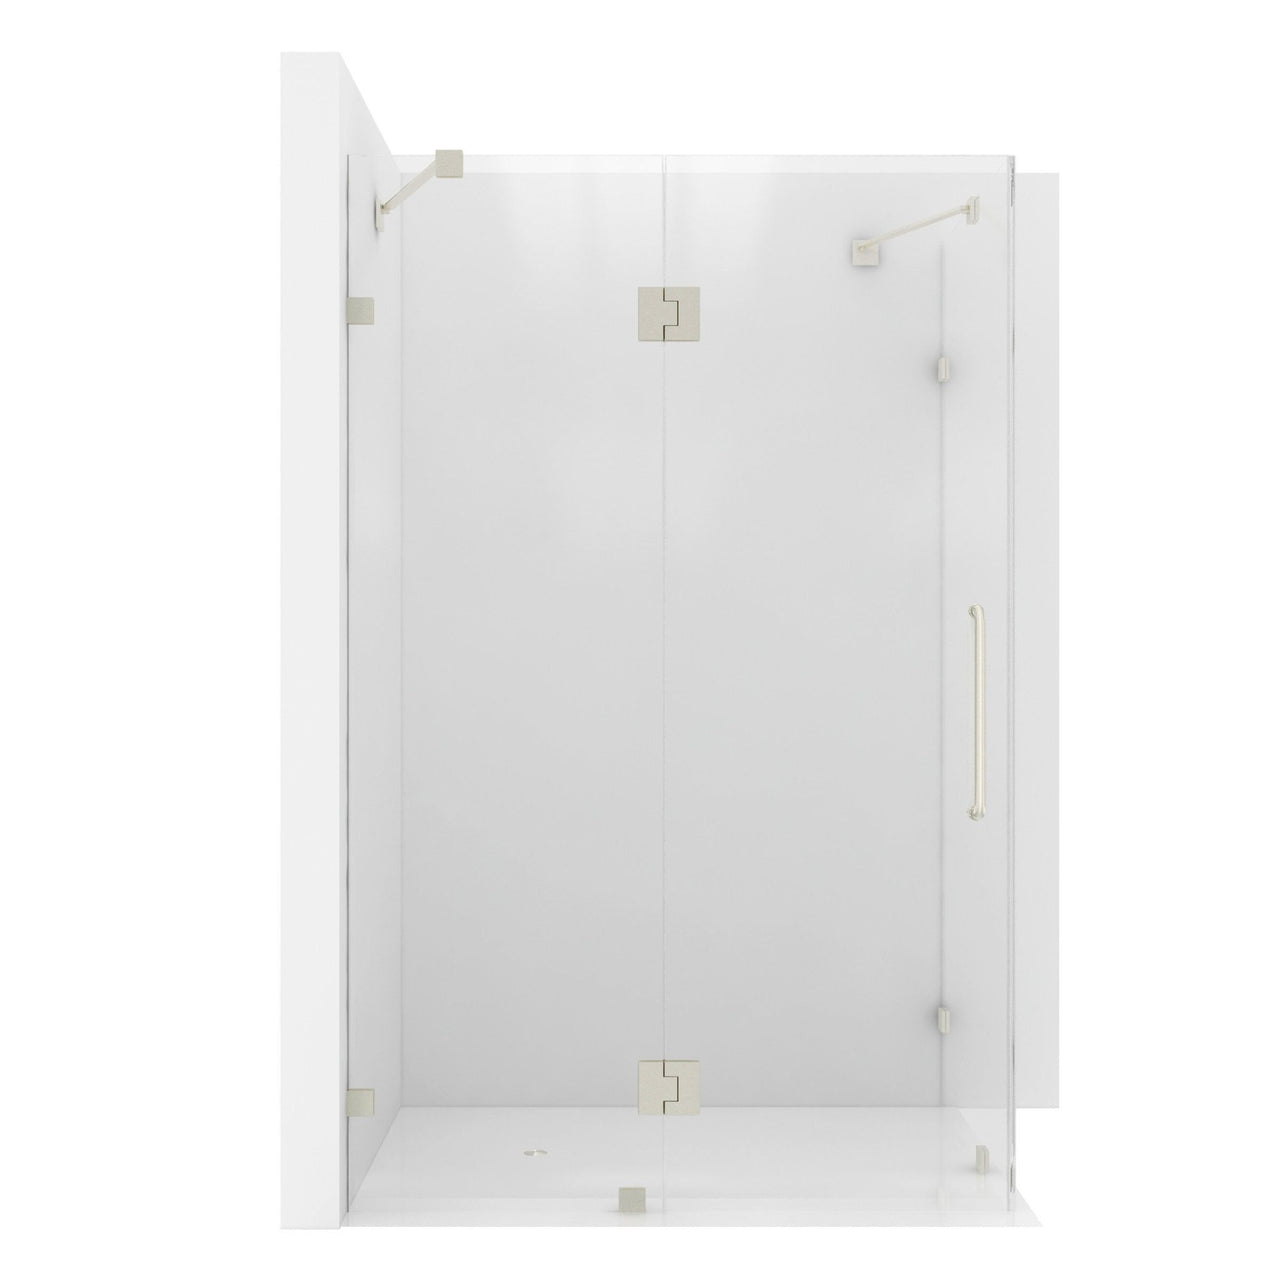 ANZZI Archon Series SD-AZ03-01BN Shower Doors Shower Doors ANZZI 